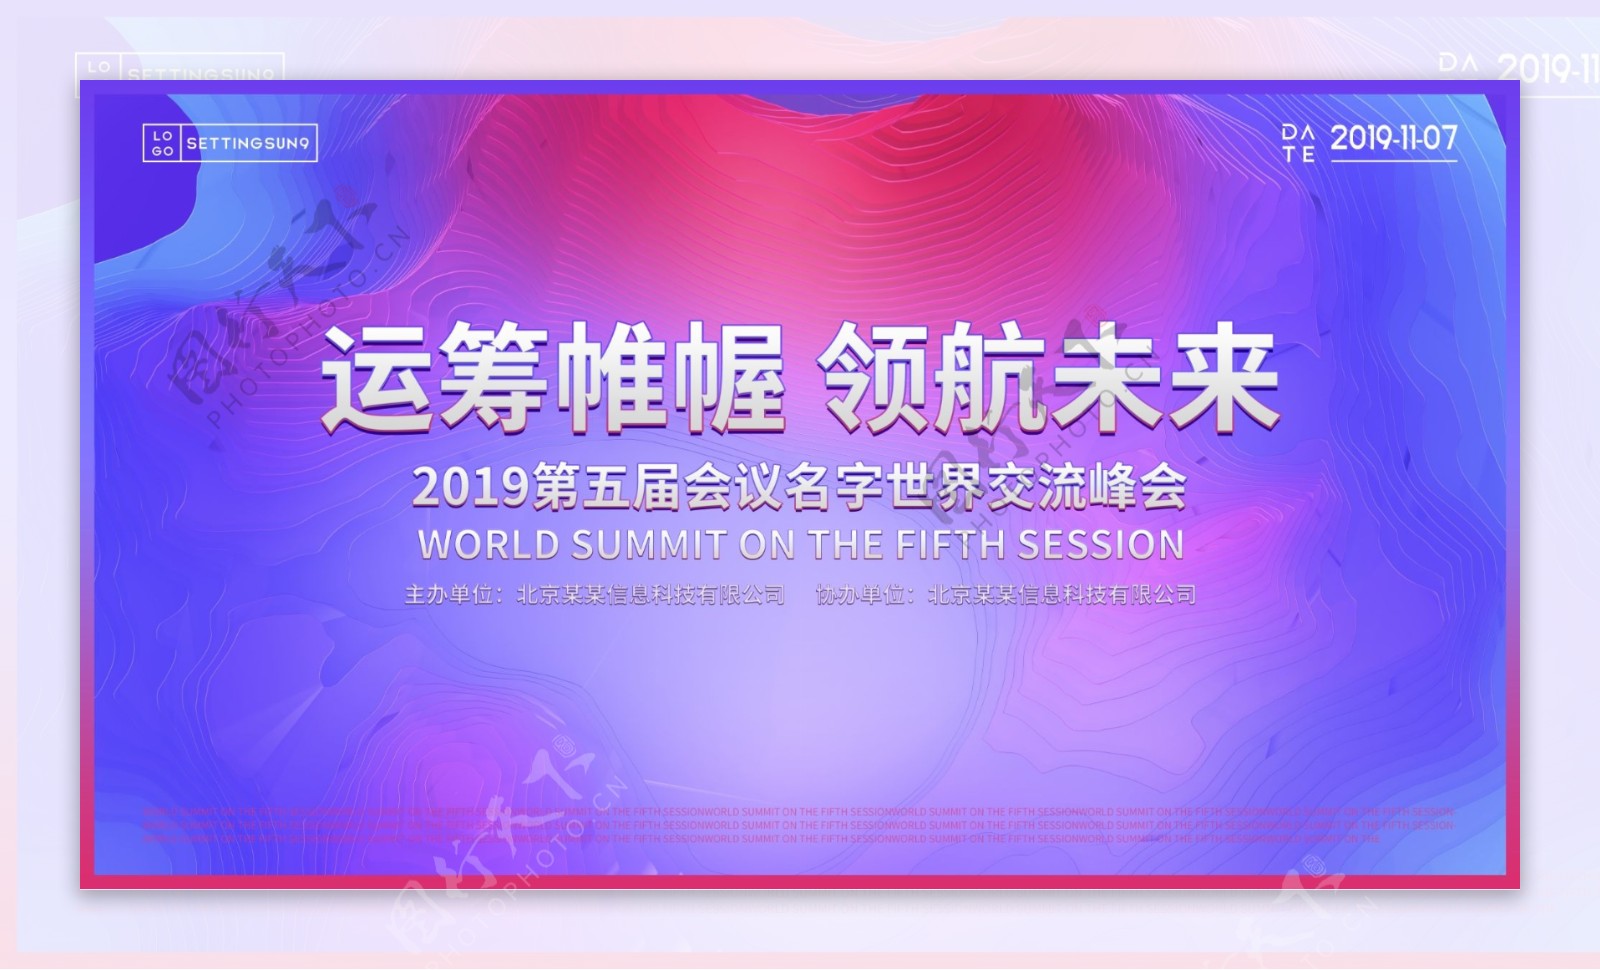 2019炫彩科技会议背景板